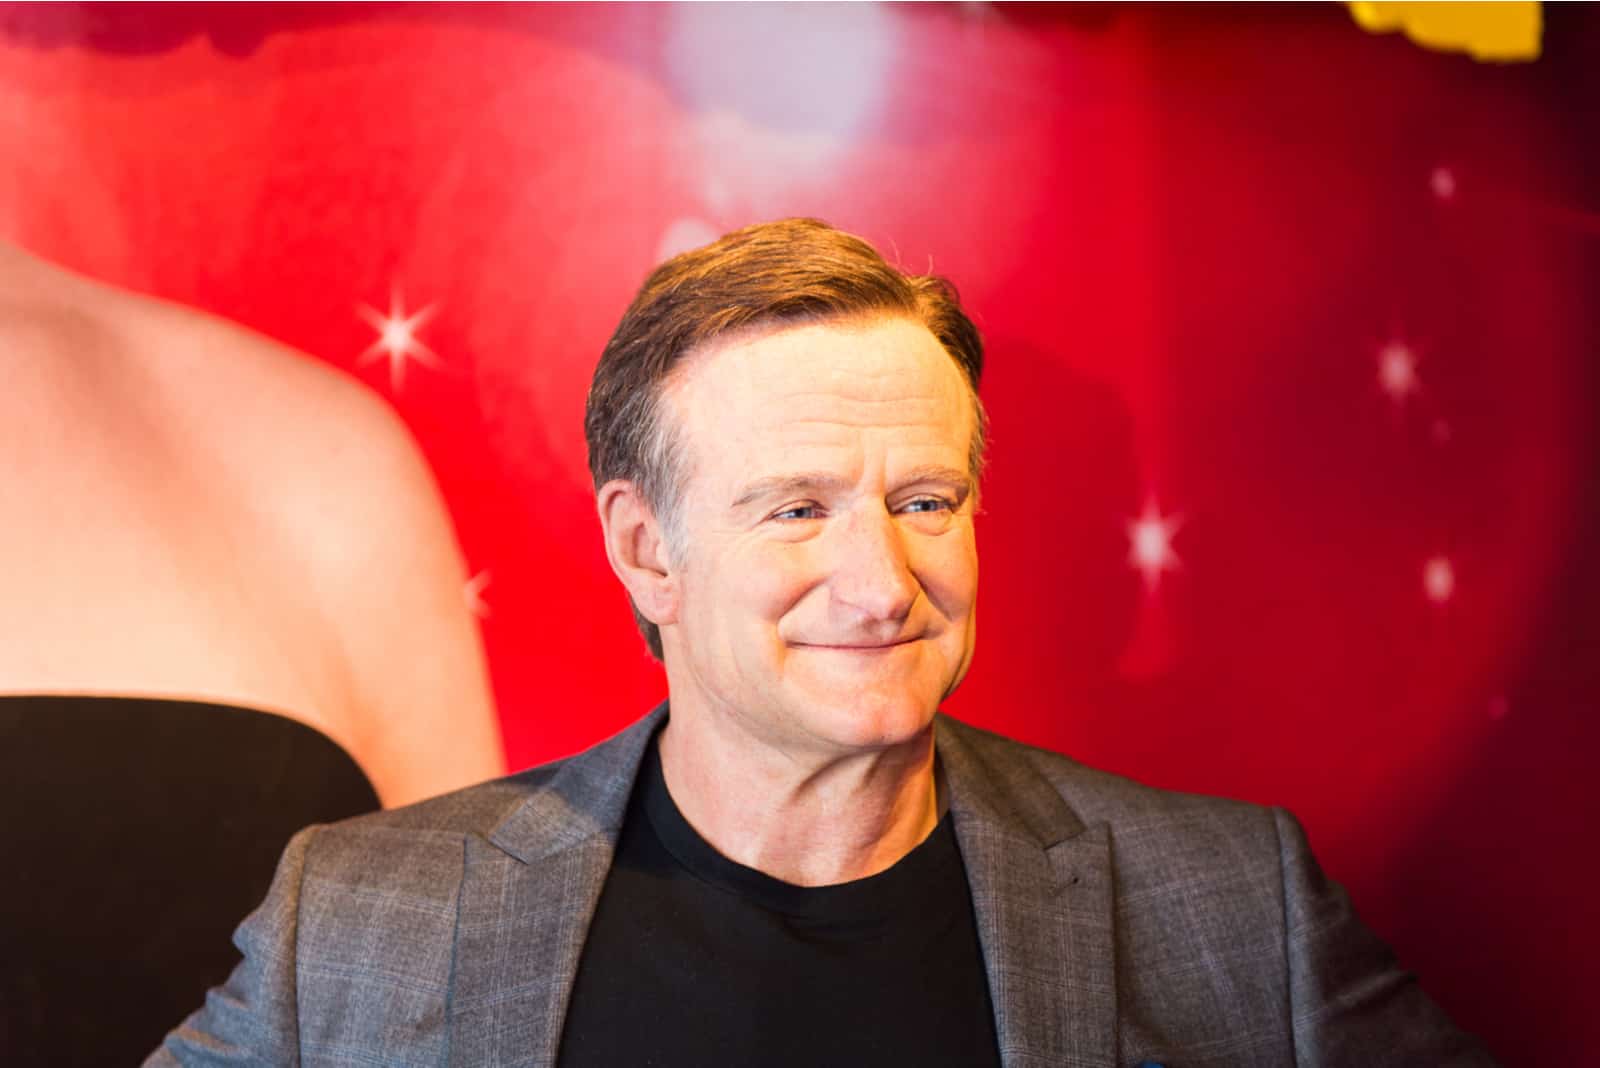 Robin Williams Zitate: Lebensweisheiten unter dem Schleier des Humors